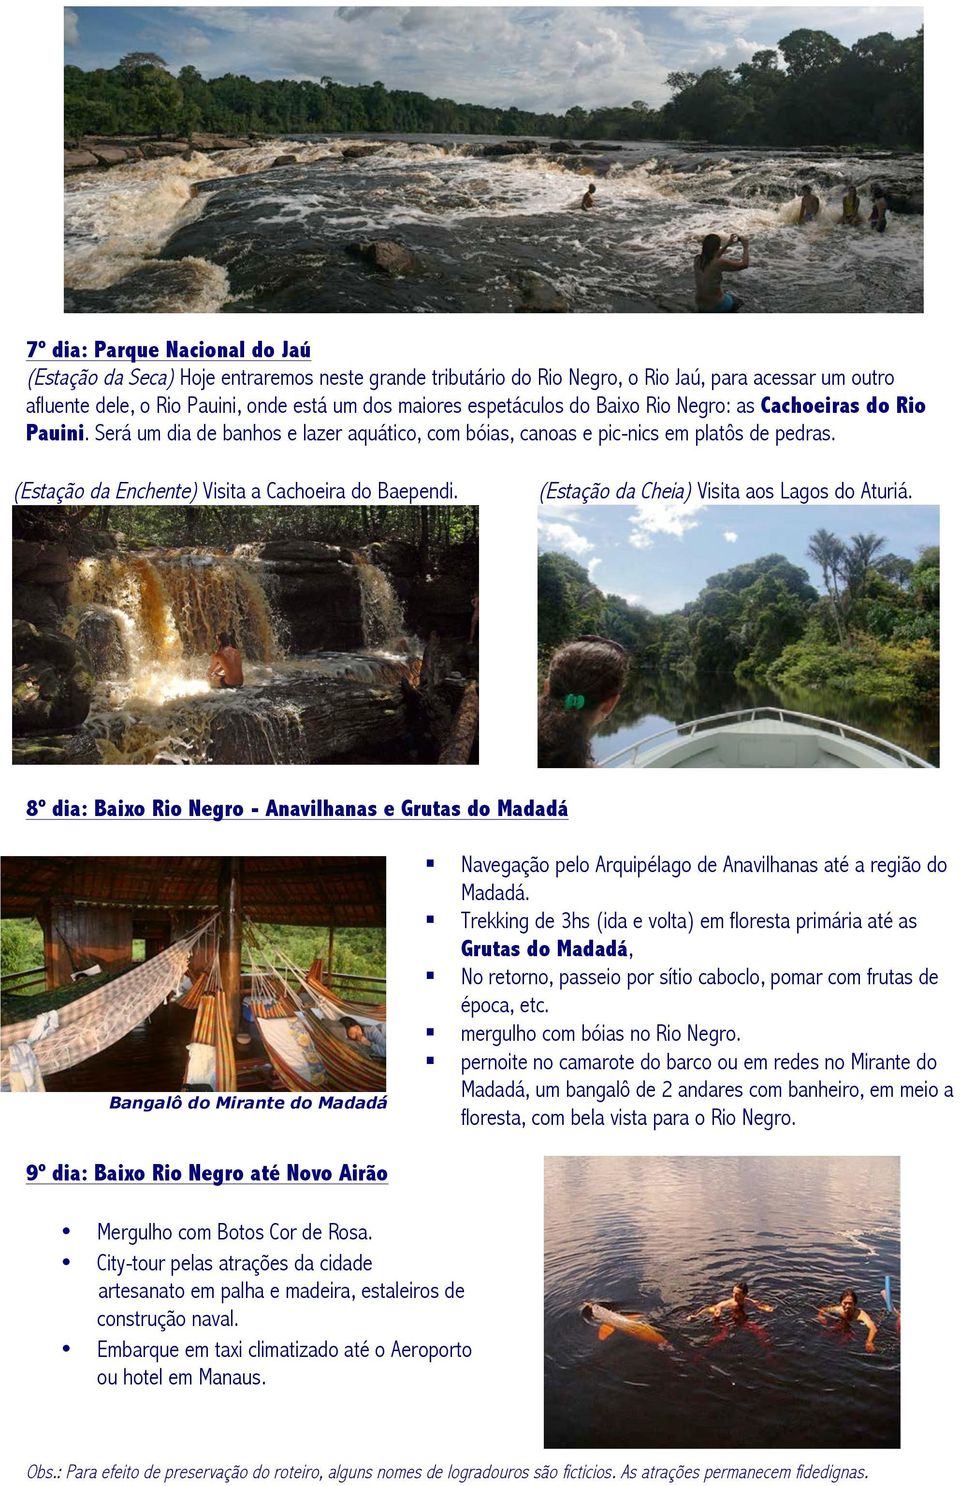 (Estação da Enchente) Visita a Cachoeira do Baependi. (Estação da Cheia) Visita aos Lagos do Aturiá.